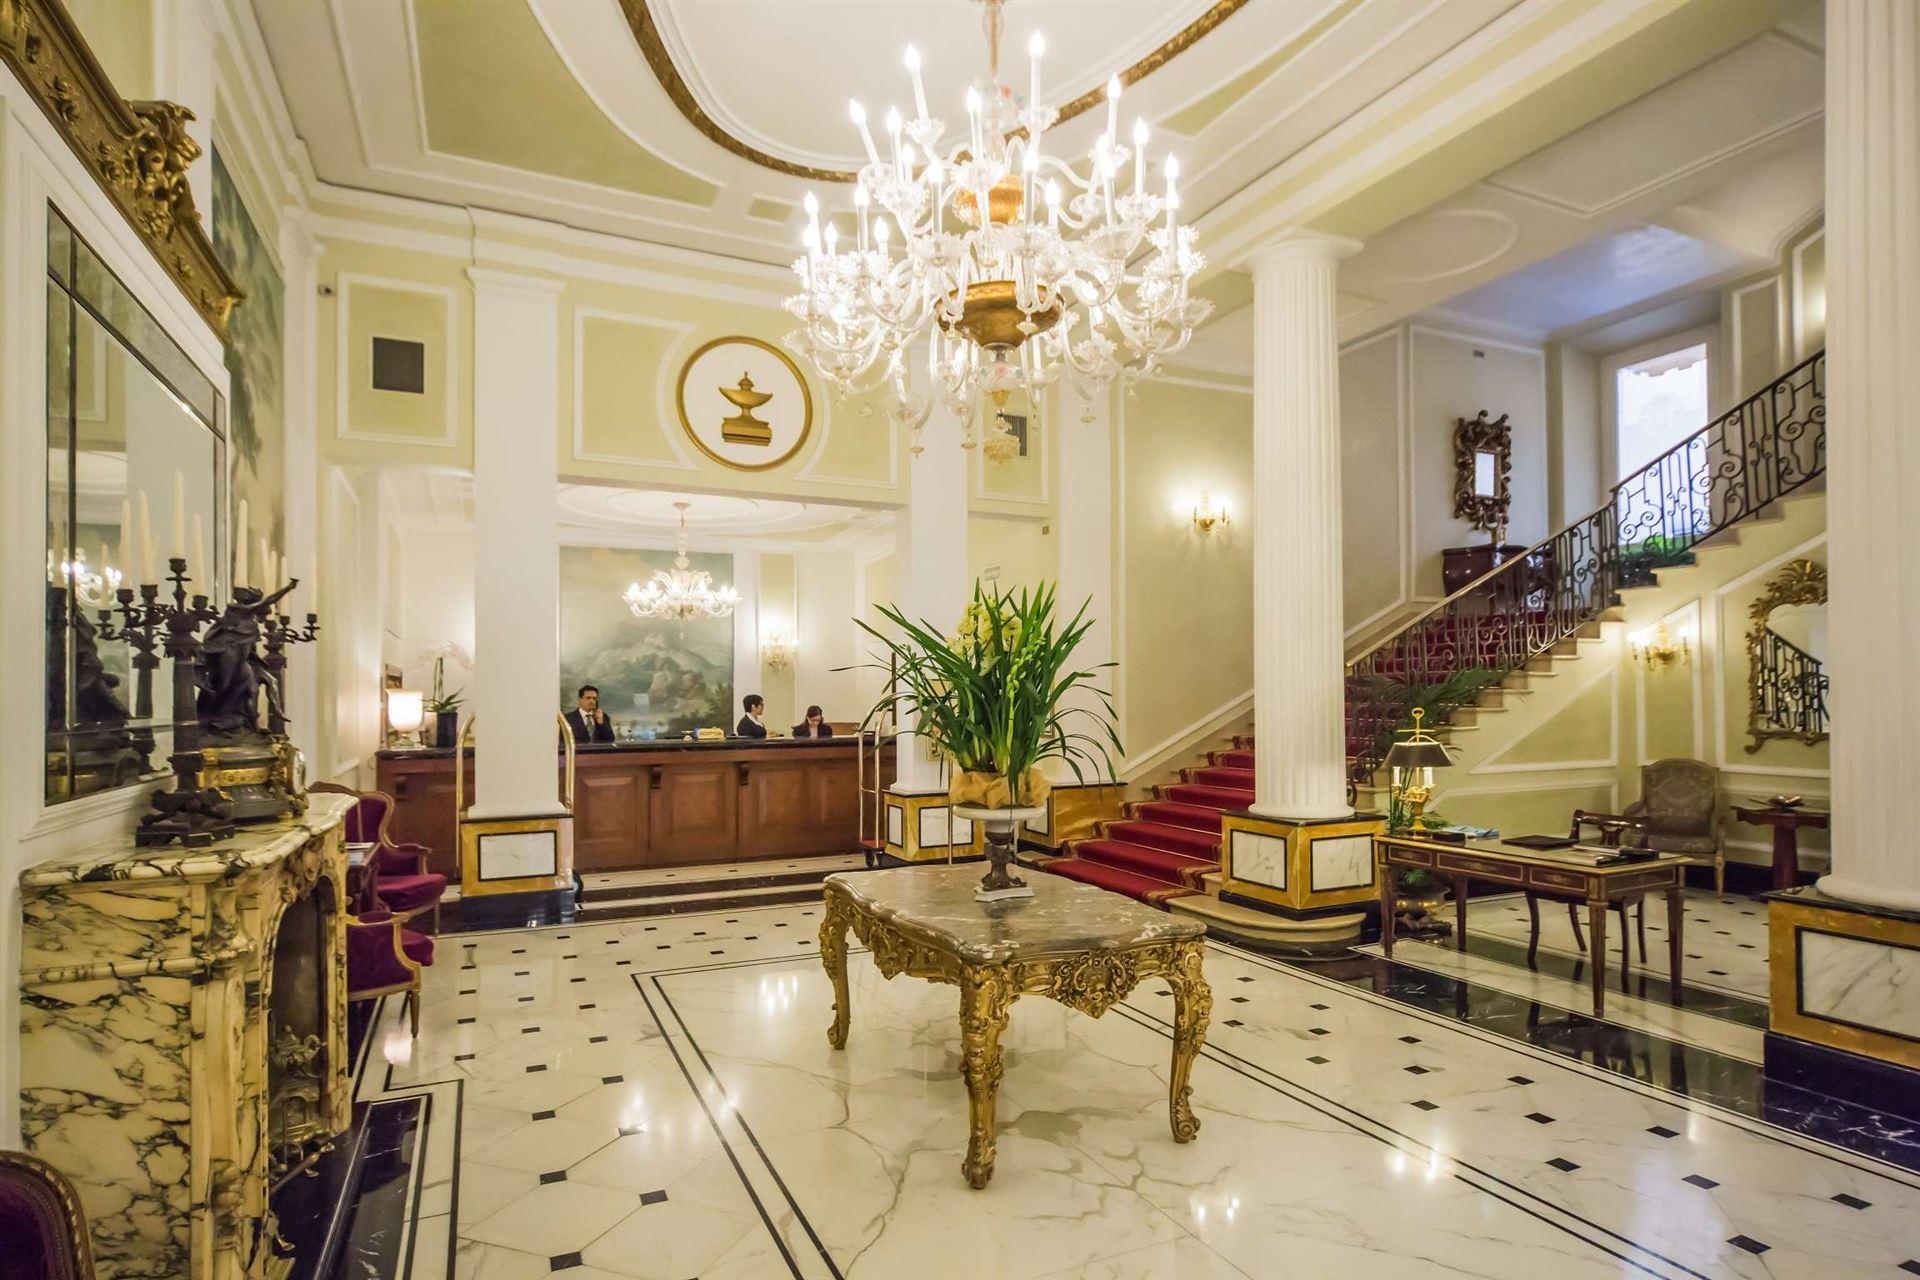 Grand Hotel Majestic Gia’ Baglioni luxe hotel deals